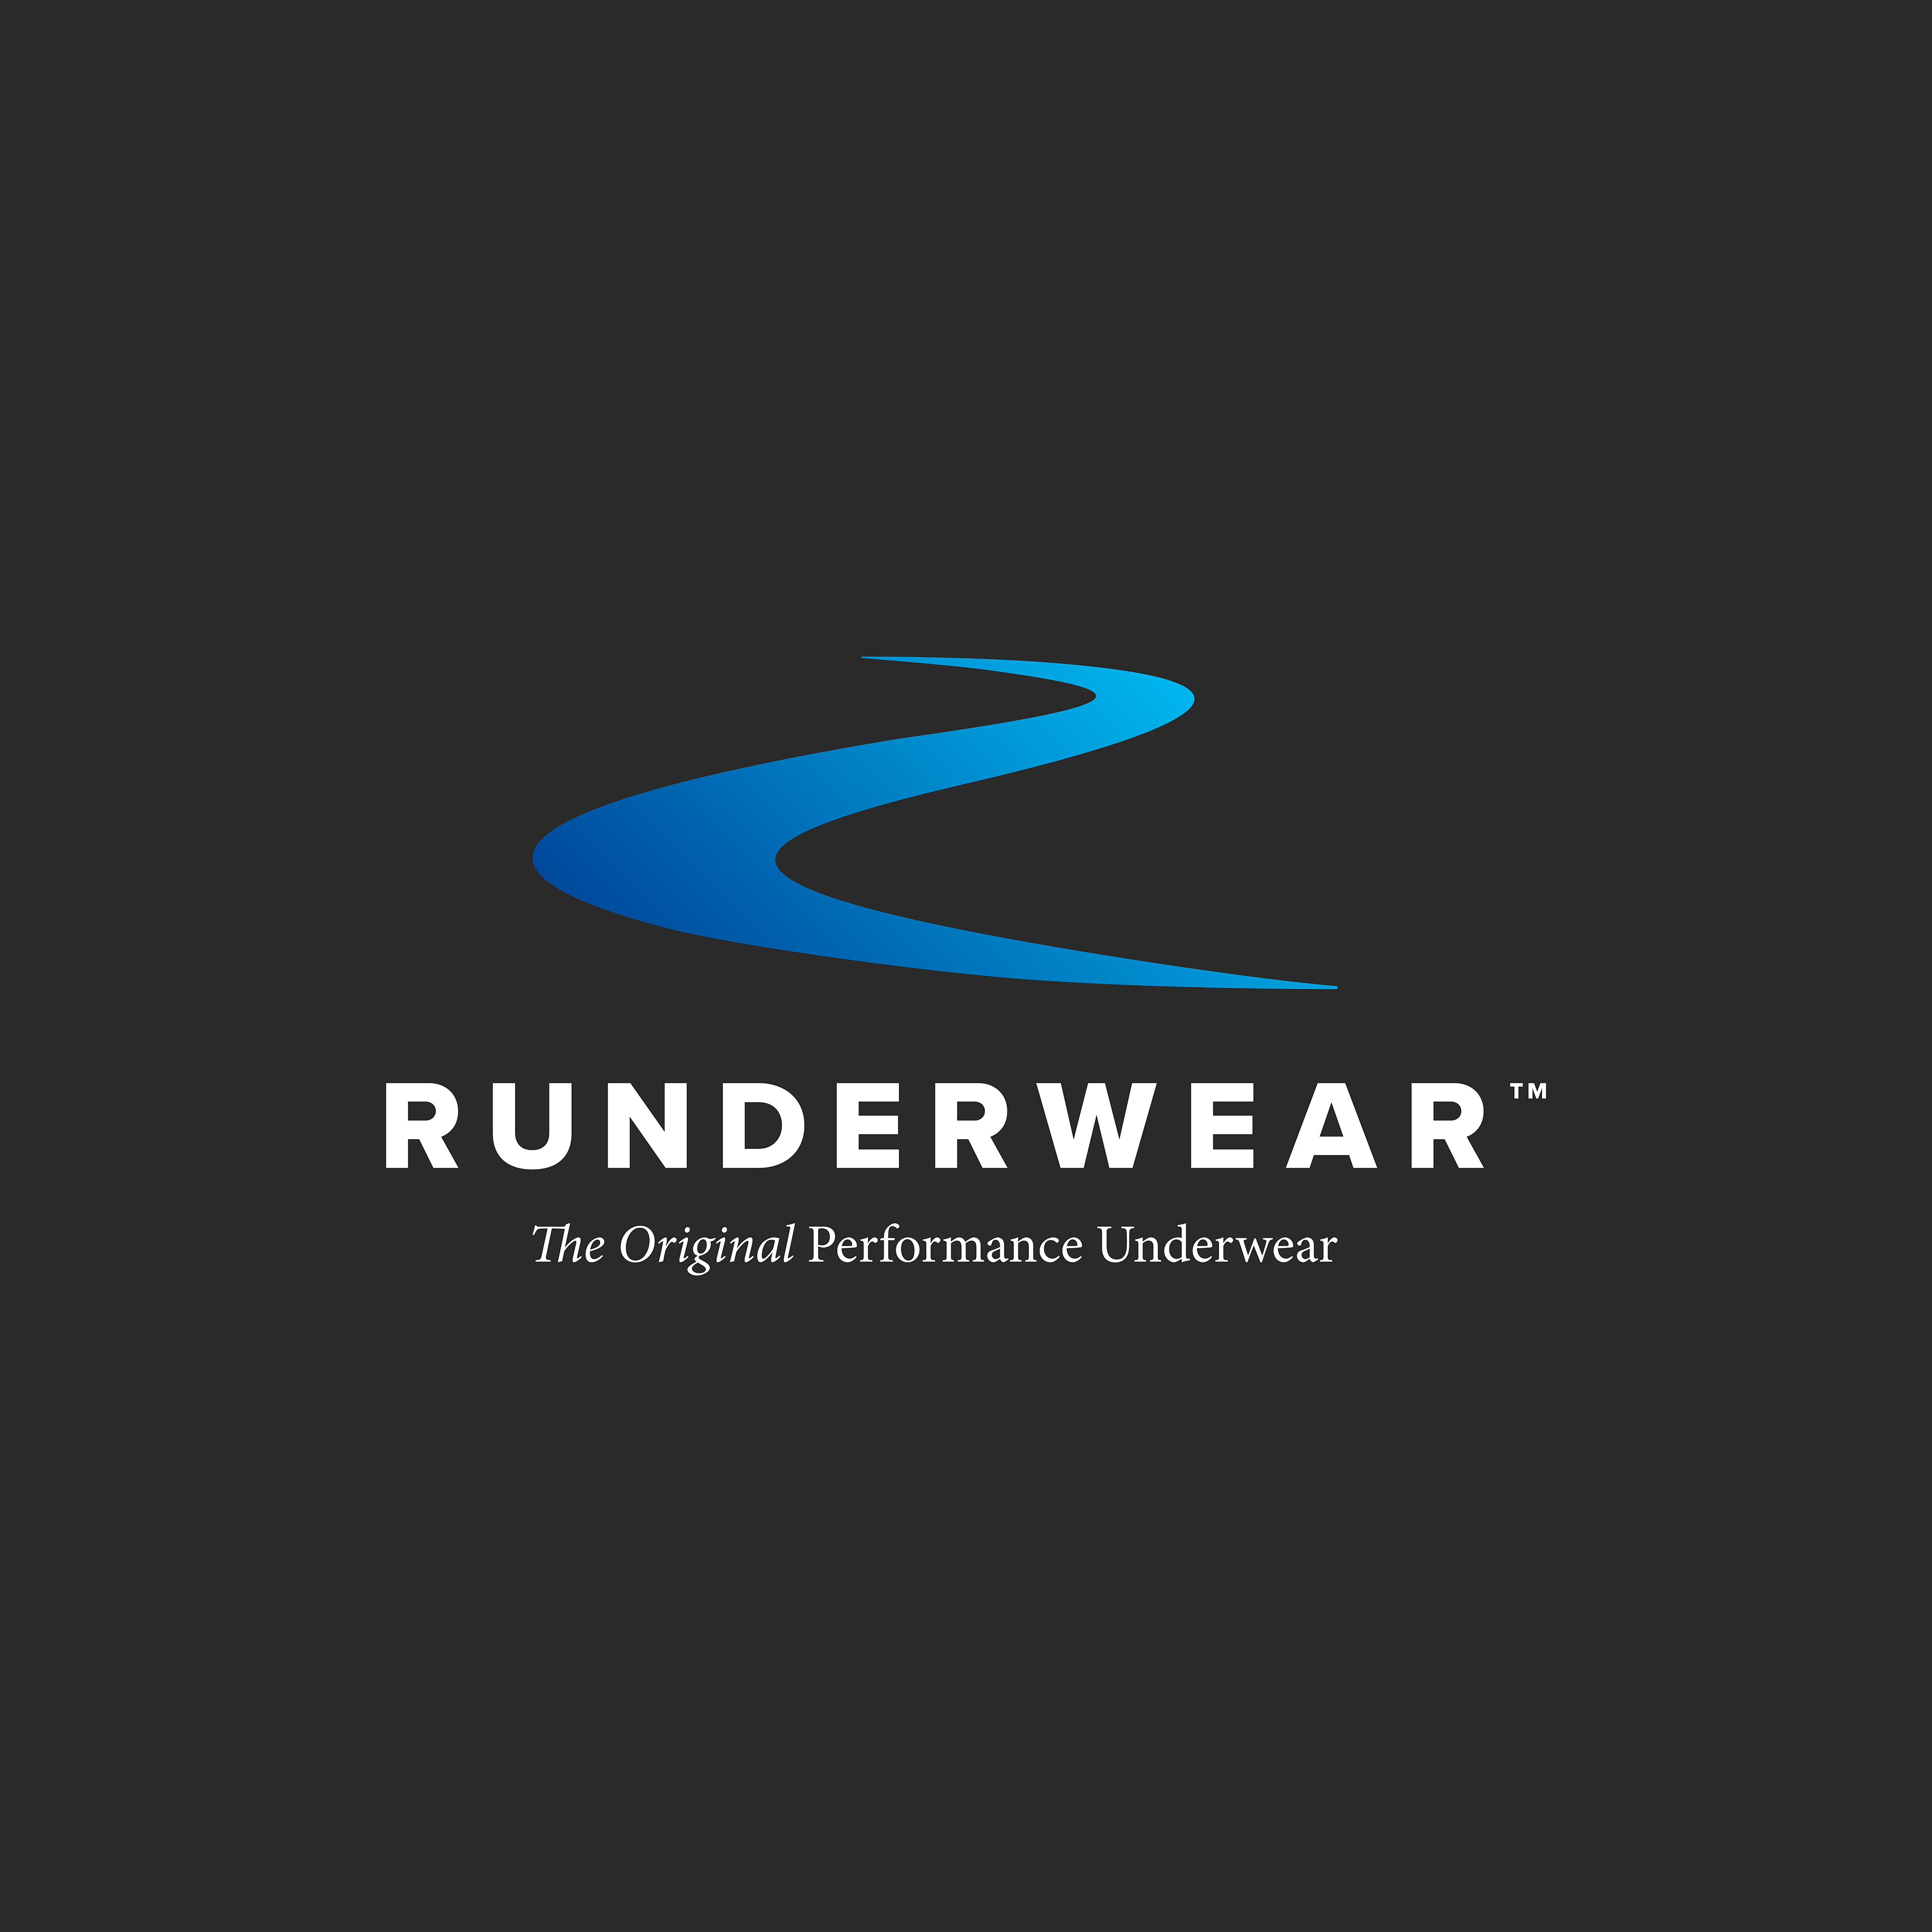 Runderwear logo